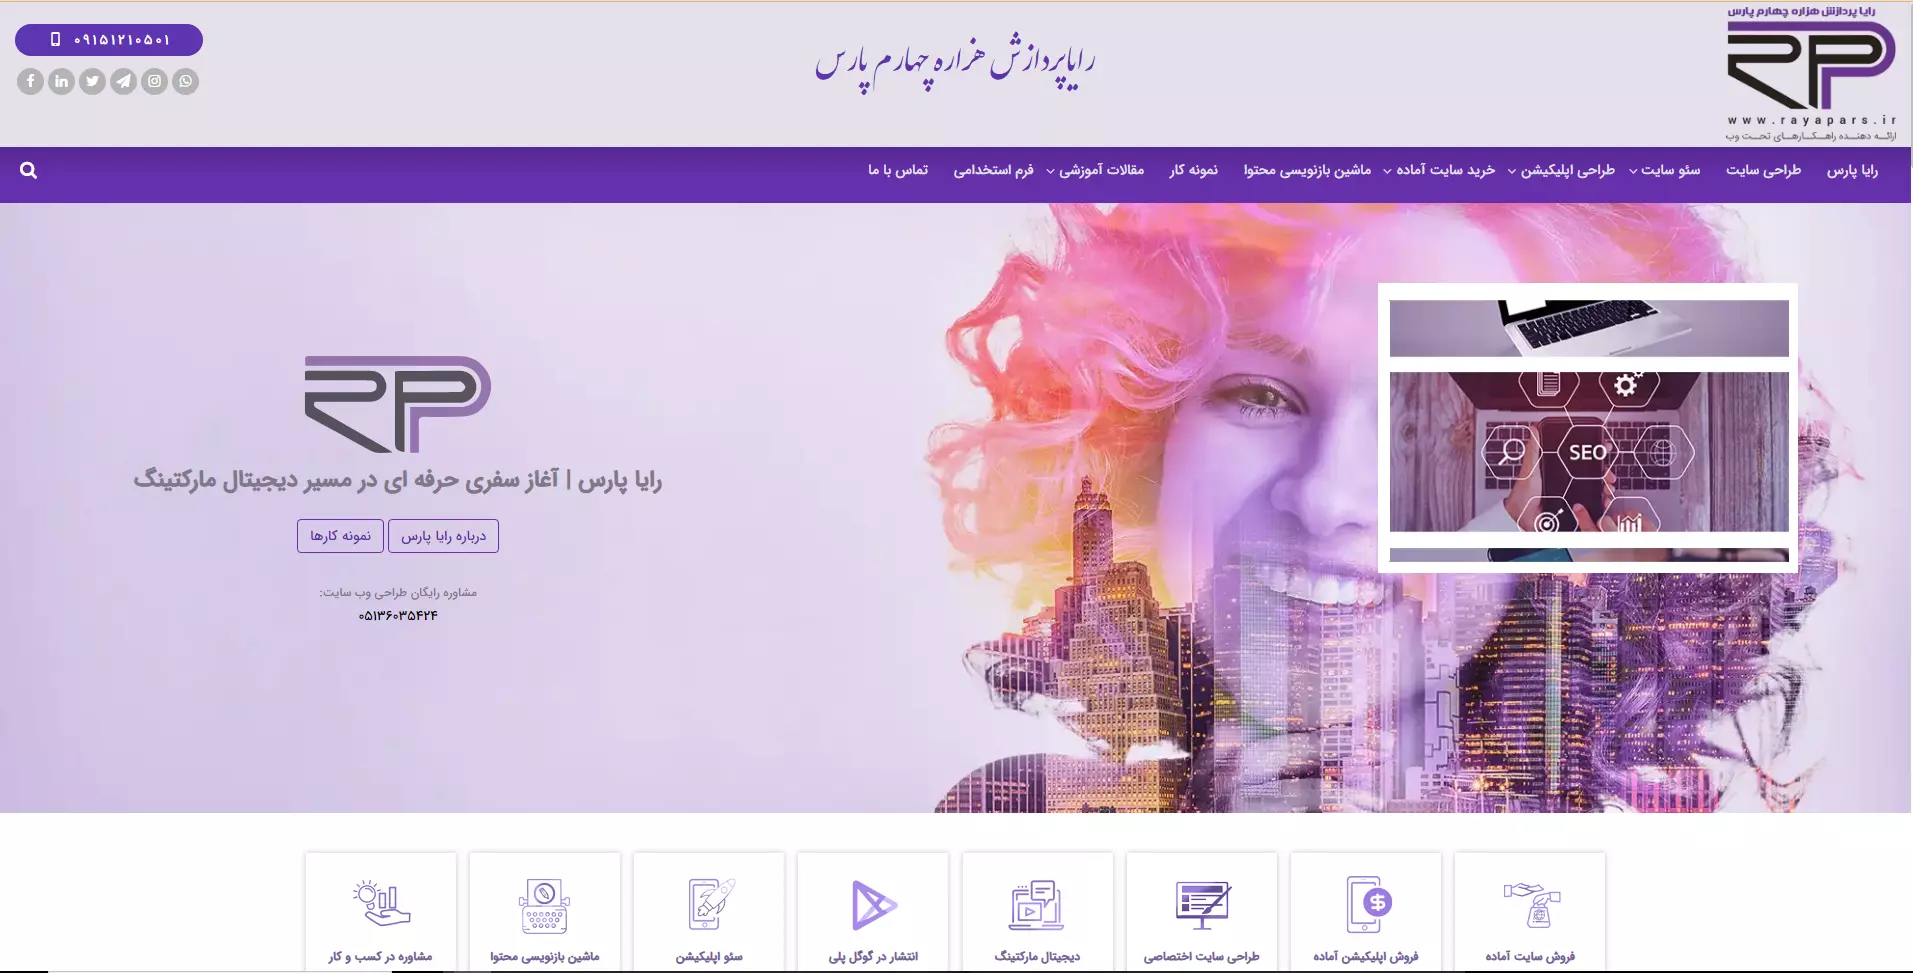 دومین شرکت طراحی سایت در مشهد - رایا پارس